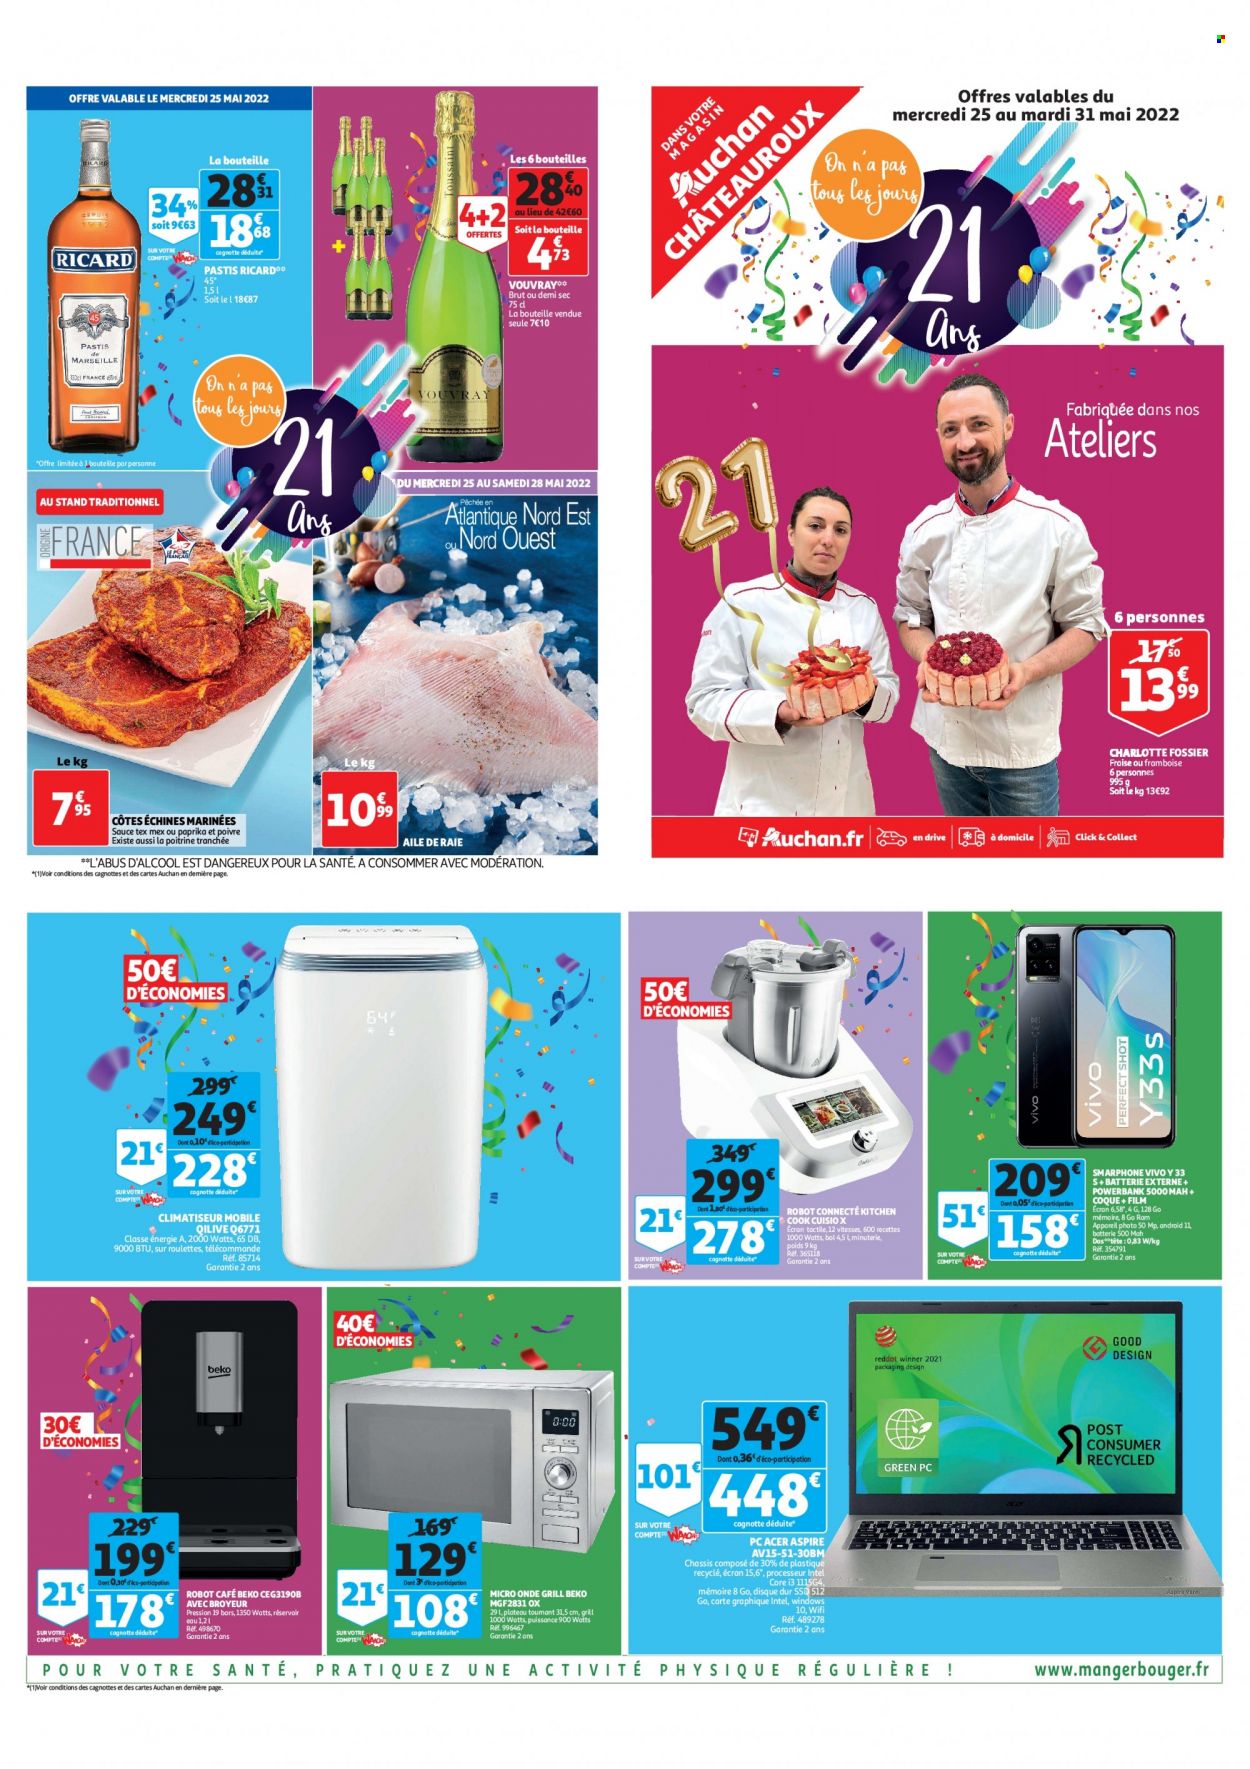 thumbnail - Catalogue Auchan - 25/05/2022 - 31/05/2022 - Produits soldés - Beko, raie, café, pastis, batterie de secours, powerbank, appareil photo, climatiseur, robot café, grill, Acer. Page 1.